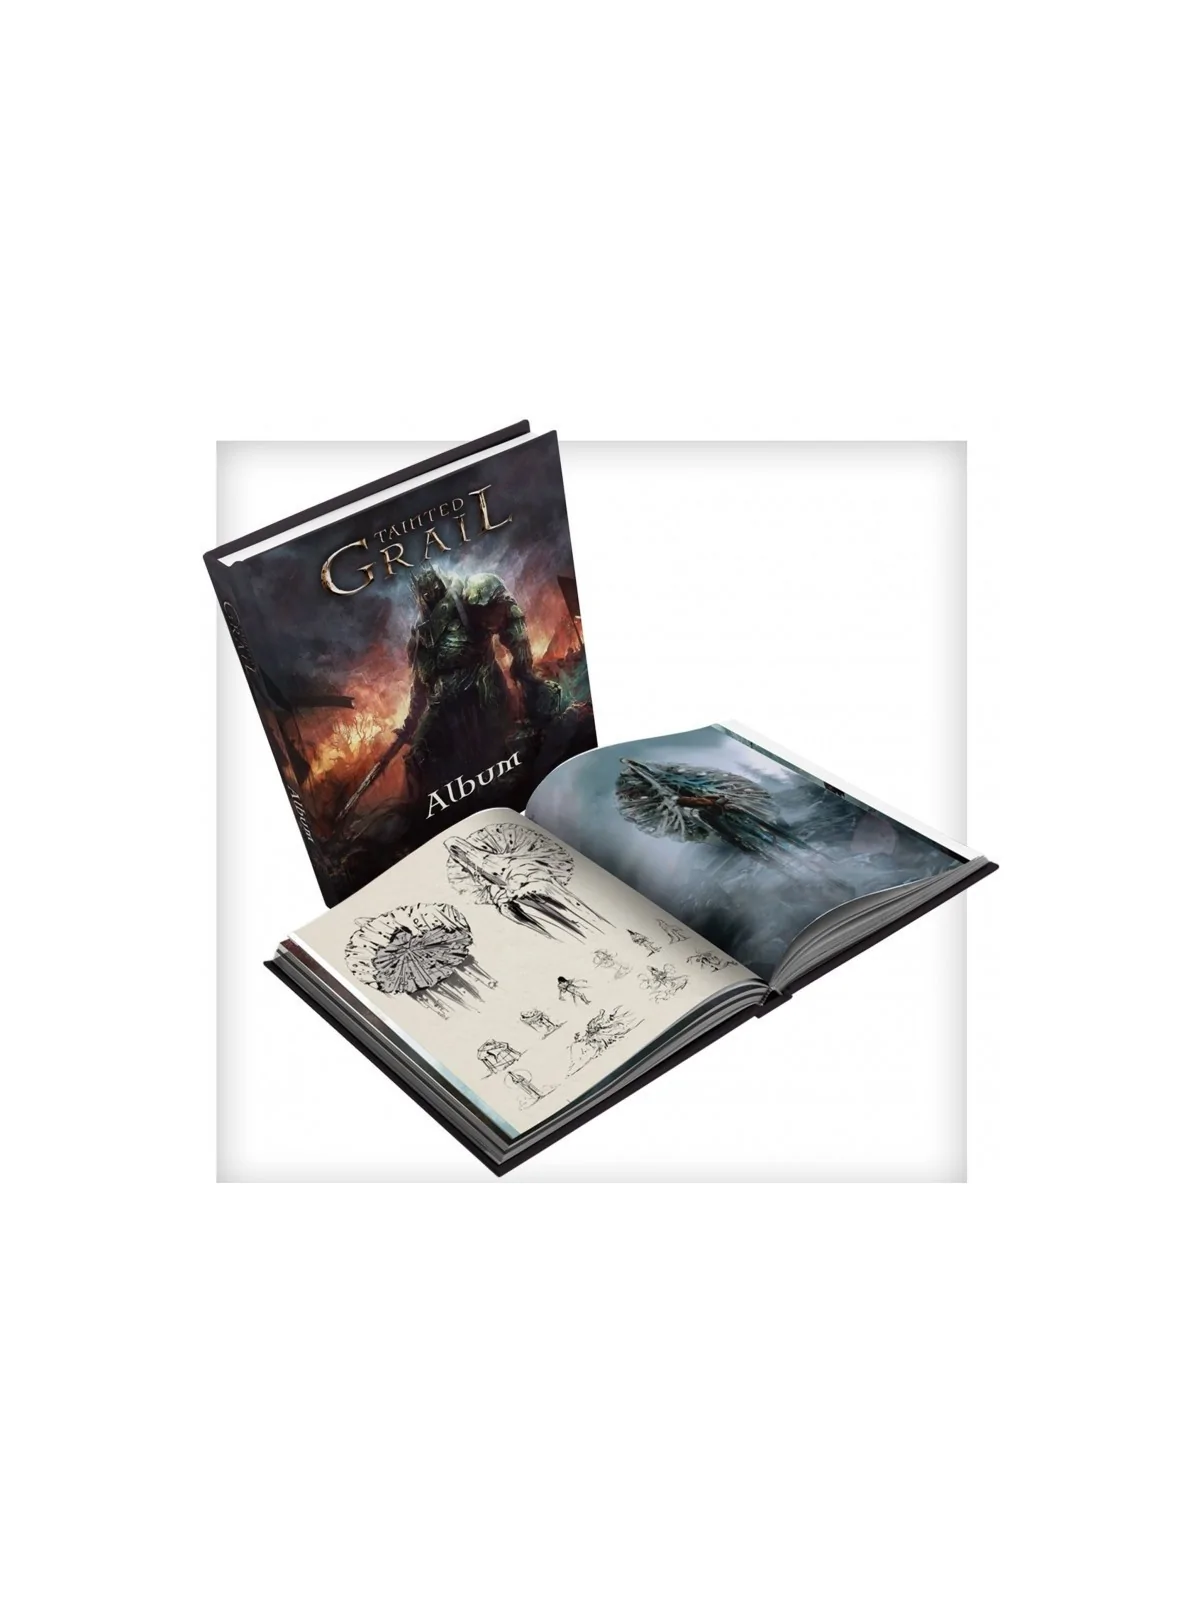 Comprar Tainted Grail: Album (Inglés) barato al mejor precio 31,50 € d